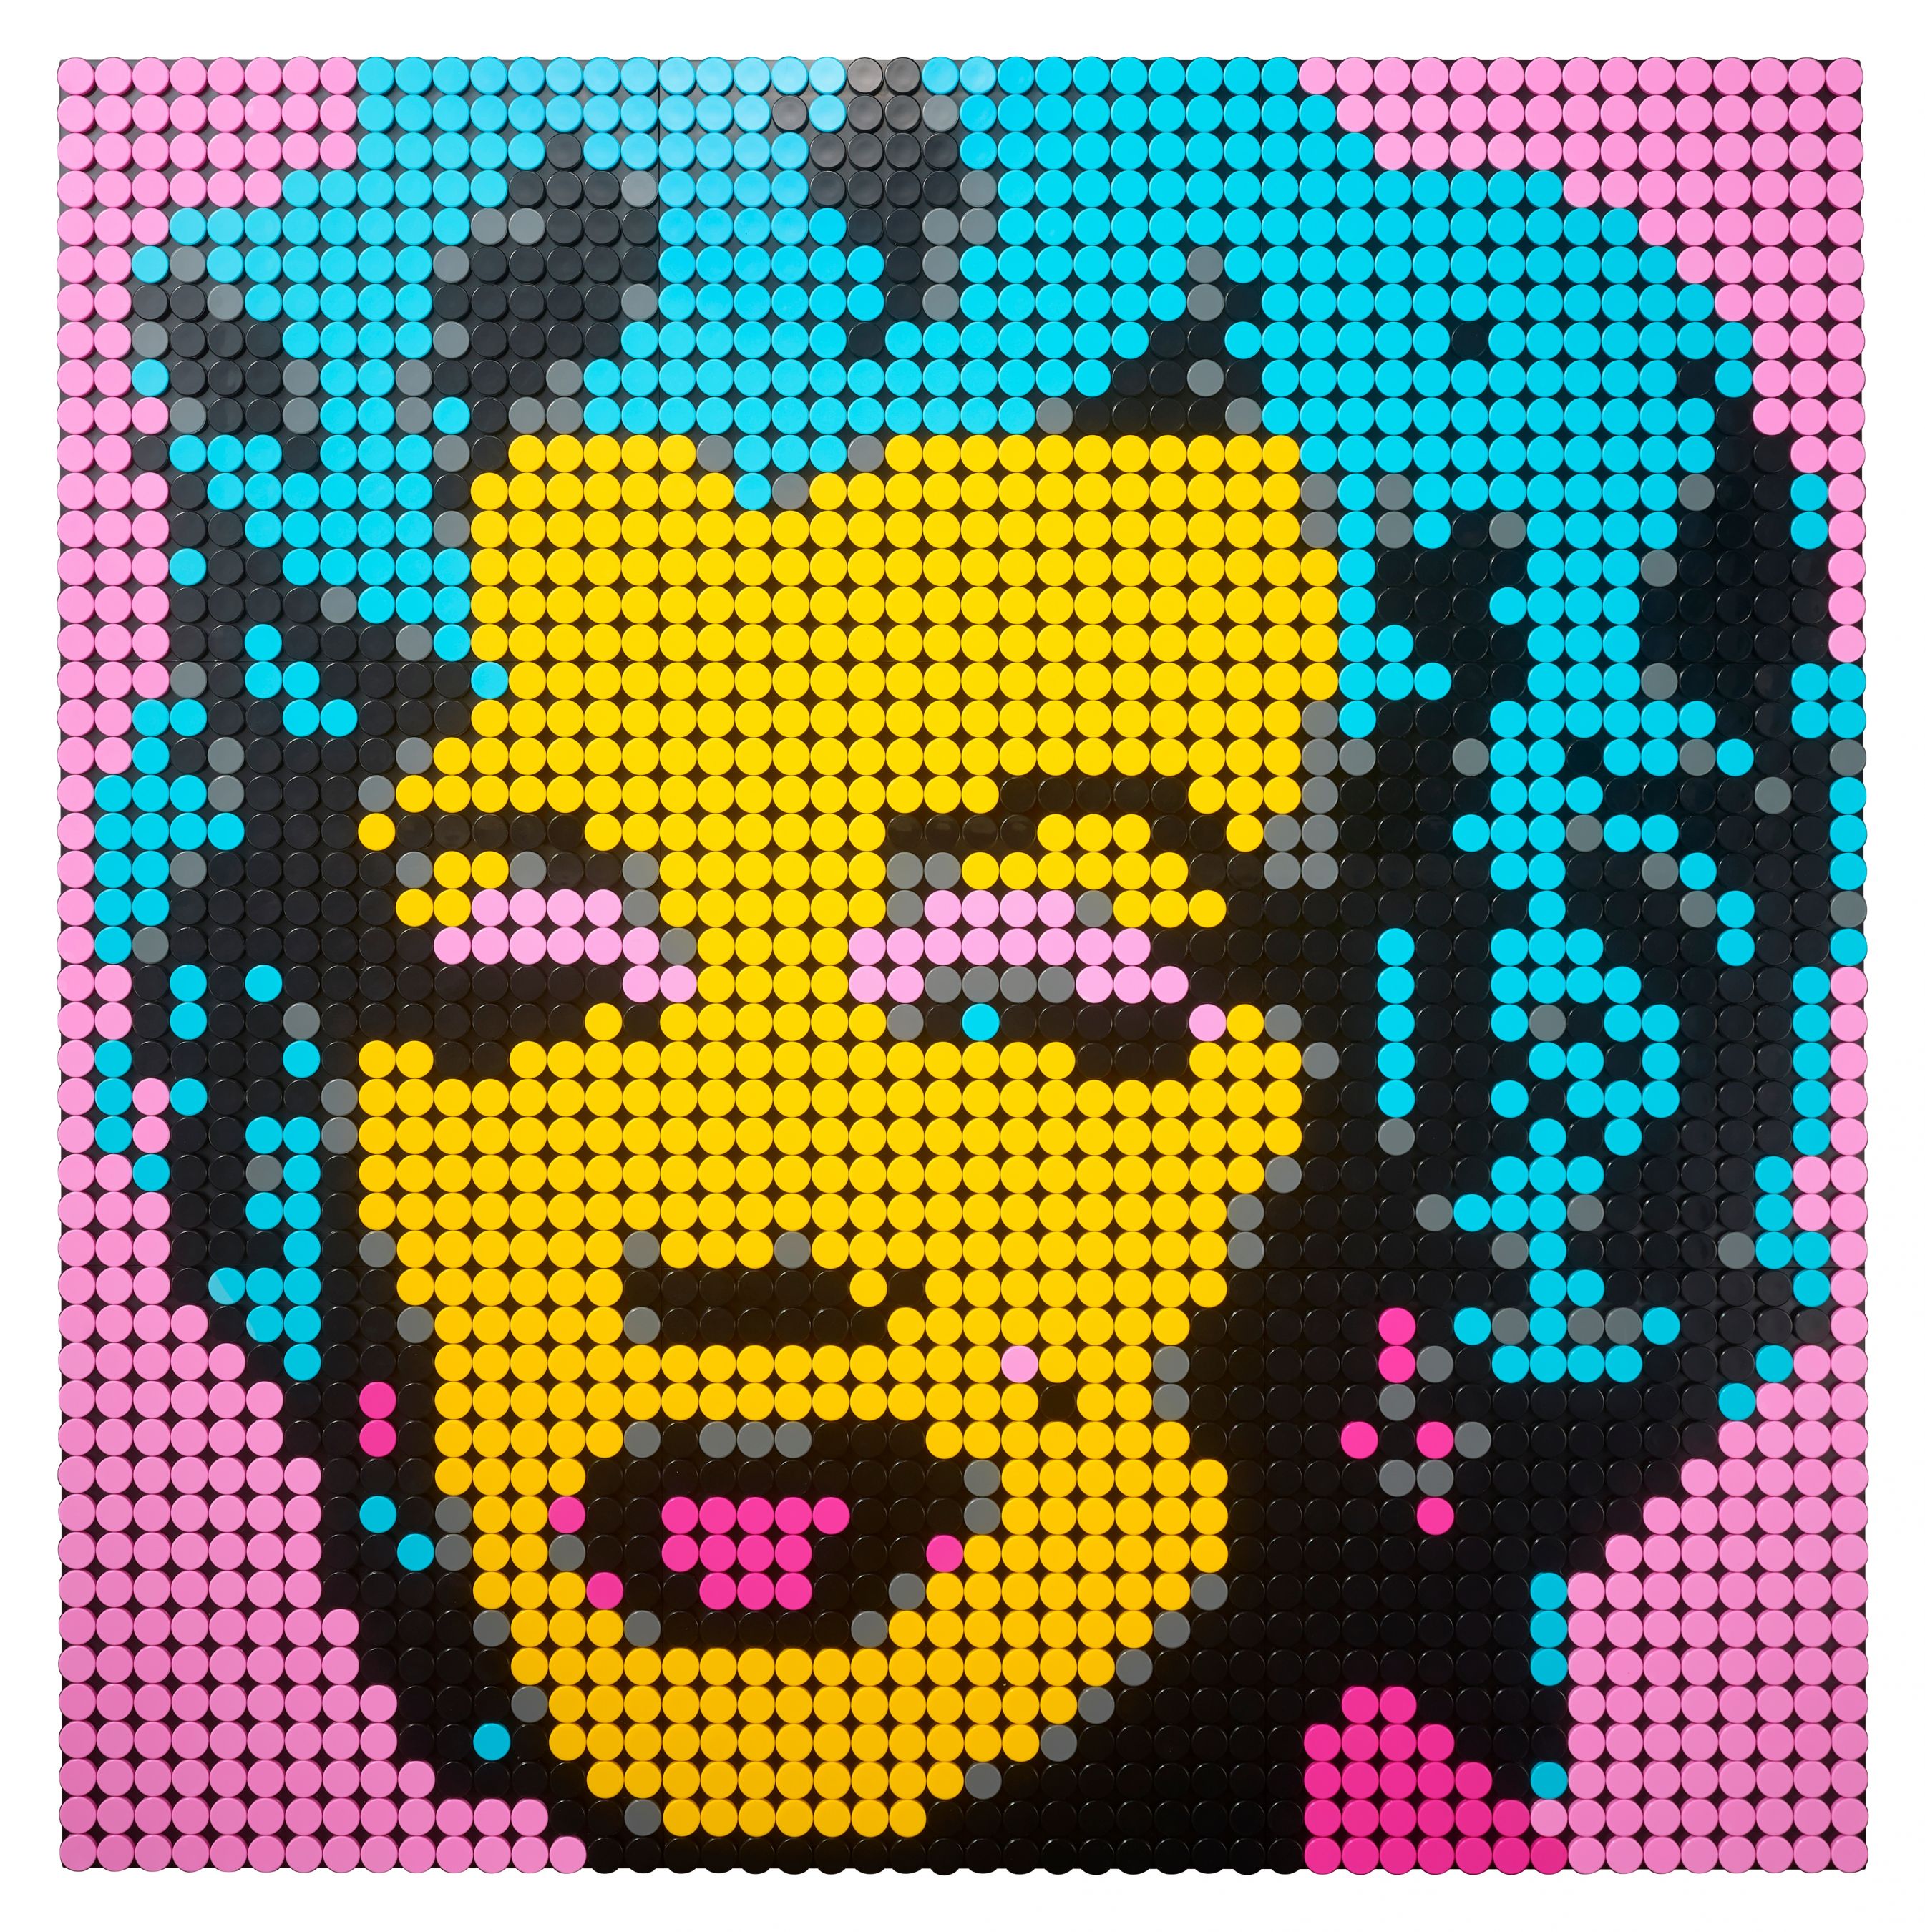 LEGO Art 31197 Andy Warhol's Marilyn Monroe LEGO_31197_alt5.jpg